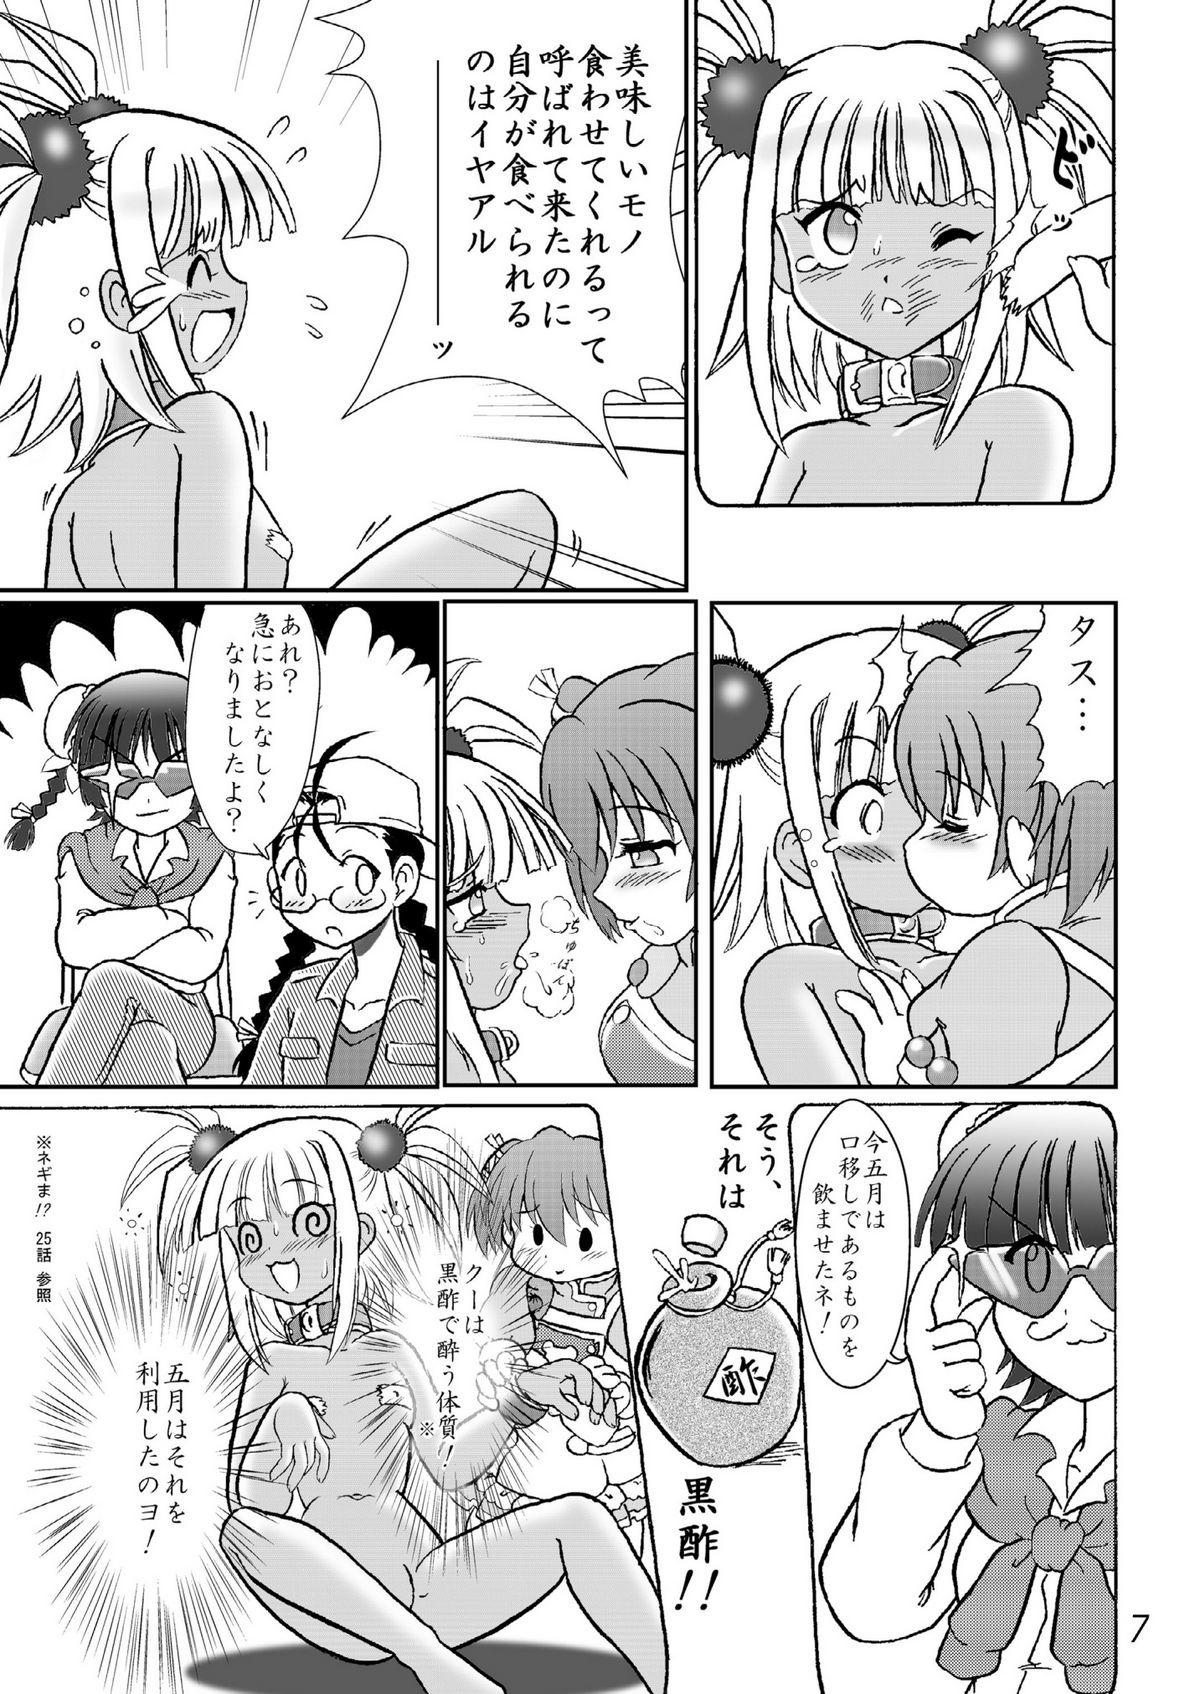 Amatoriale クッキンアイドルさっちゃん爆誕!? - Mahou sensei negima Roundass - Page 6